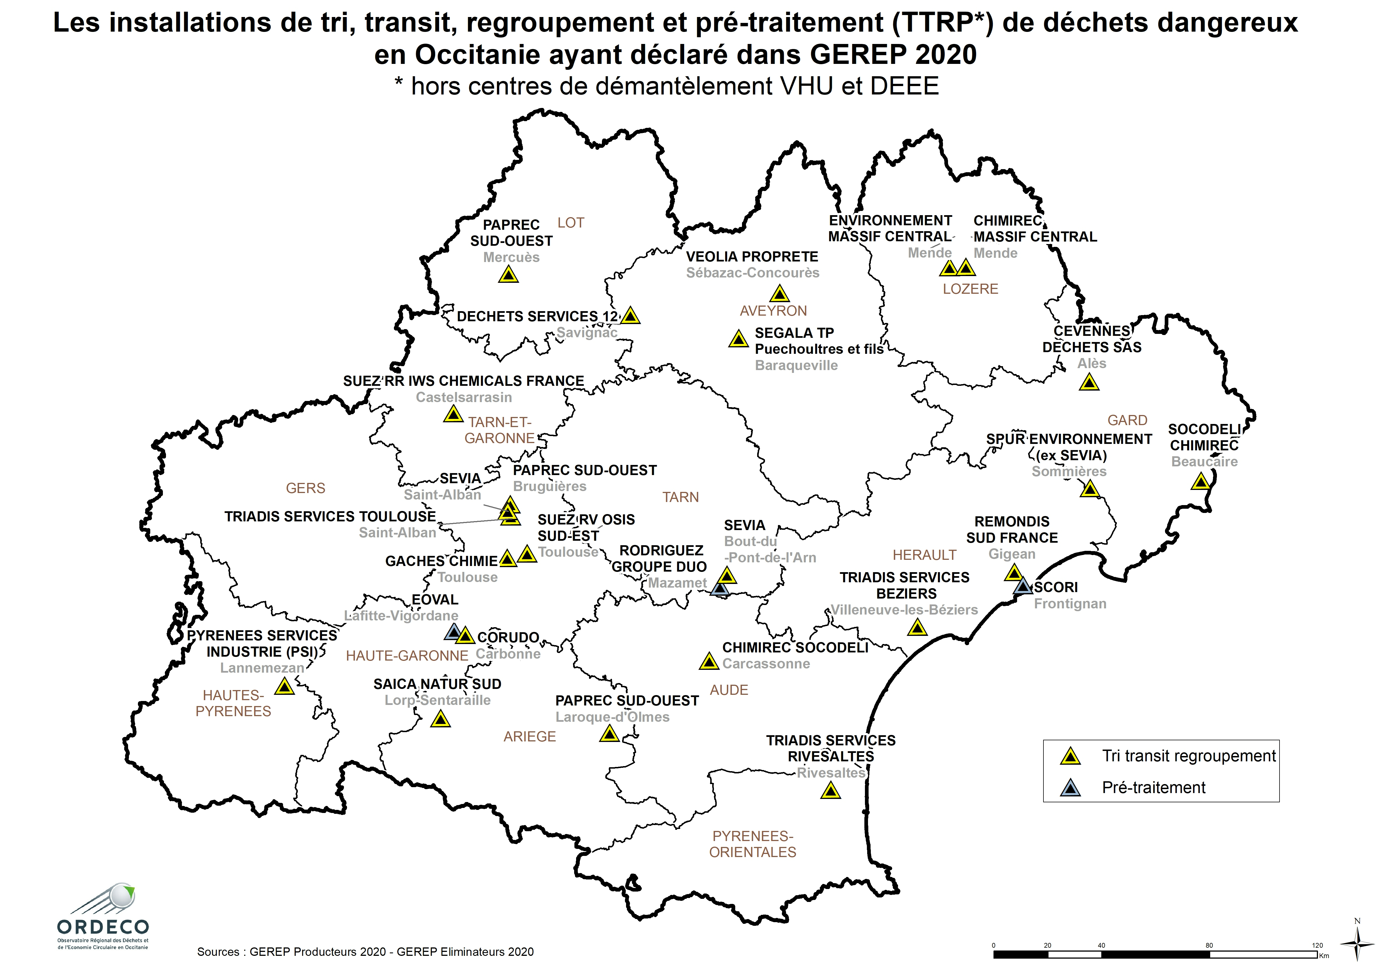 Les installations de tri, transit, regroupement et pré-traitement (TTRP) de déchets dangereux d'Occitanie, ayant déclaré dans GEREP 2020